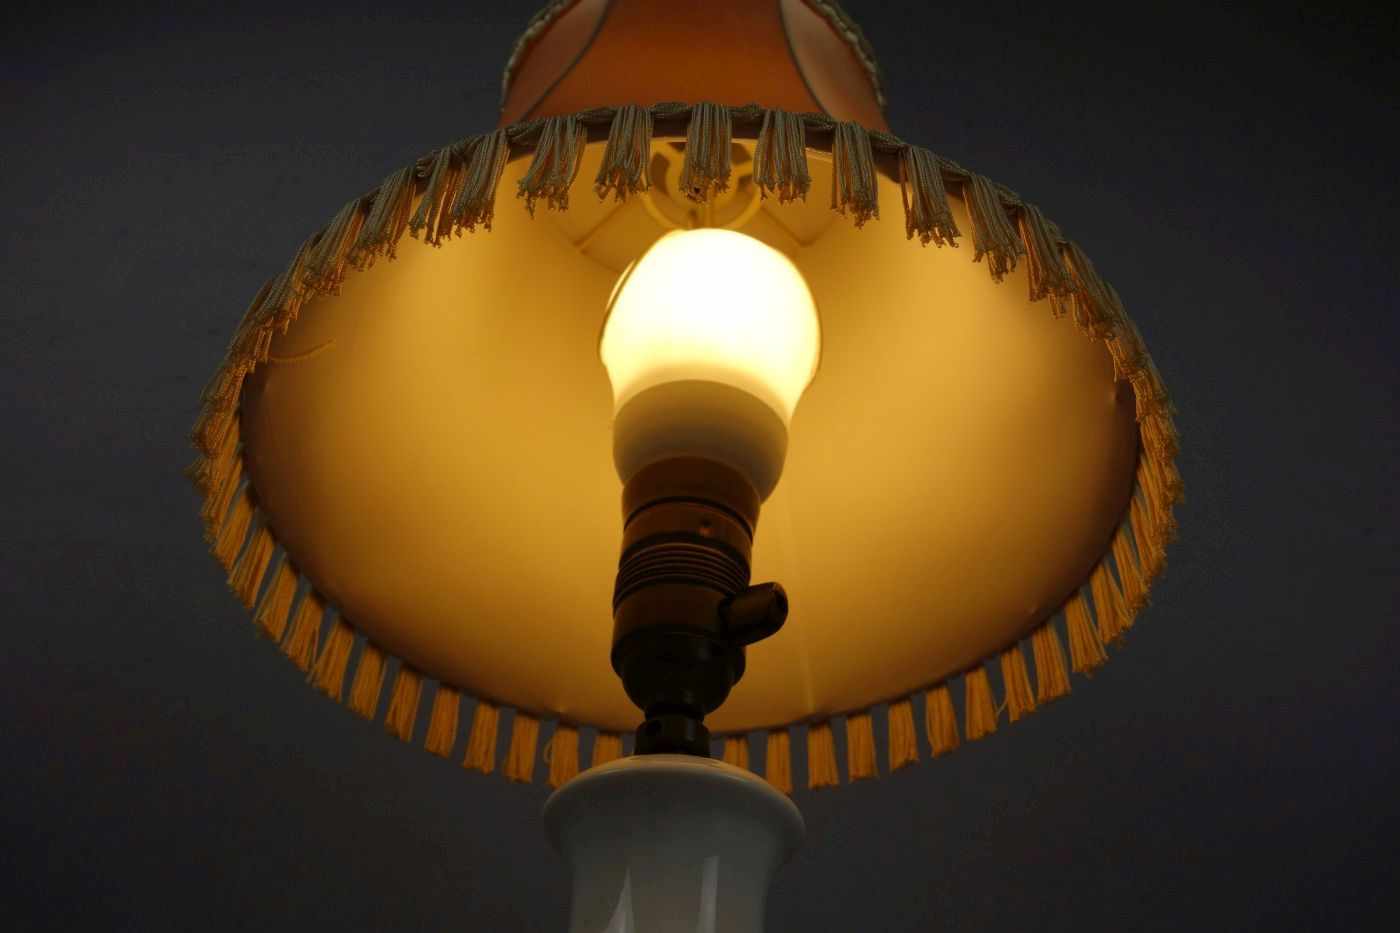 LAMPE / TISCHLAMPE mit Vasenfuß / table lamp, einflammig elektrifiziert, Fassung mit Drehschalter. - Image 3 of 4